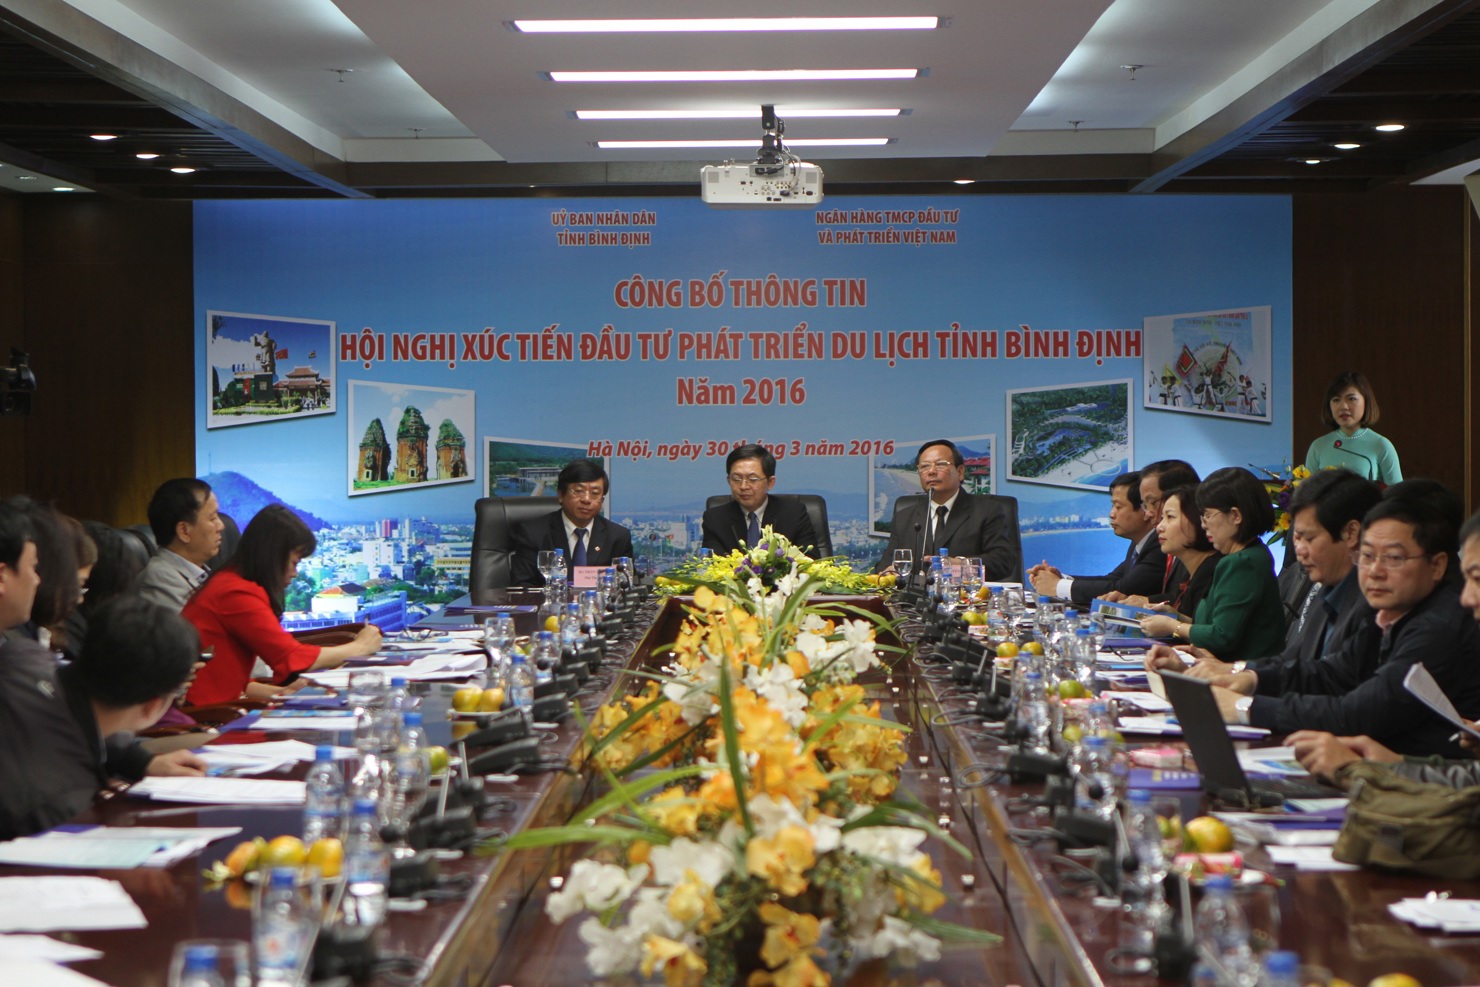 Hội nghị xúc tiến đầu tư phát triển du lịch Bình Định năm 2016 sẽ chính thức diễn ra vào ngày 3/4/2016 tại Thành phố Quy Nhơn, tỉnh Bình Định.